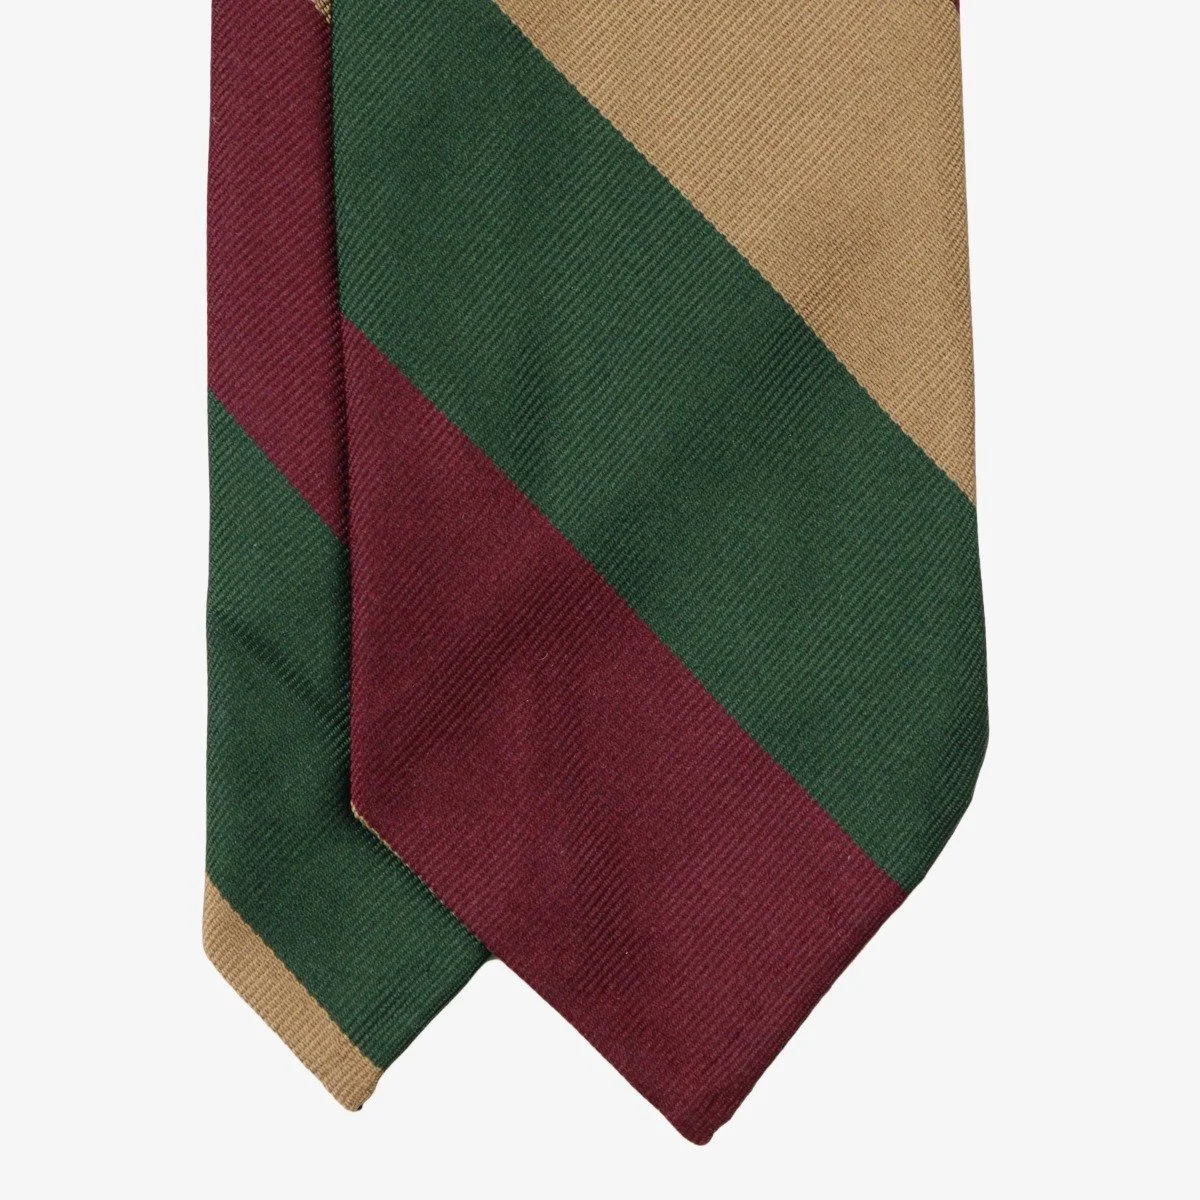 Shibumi Firenze geltonas žalias raudonas dryžuotas šilkinis kaklaraištis